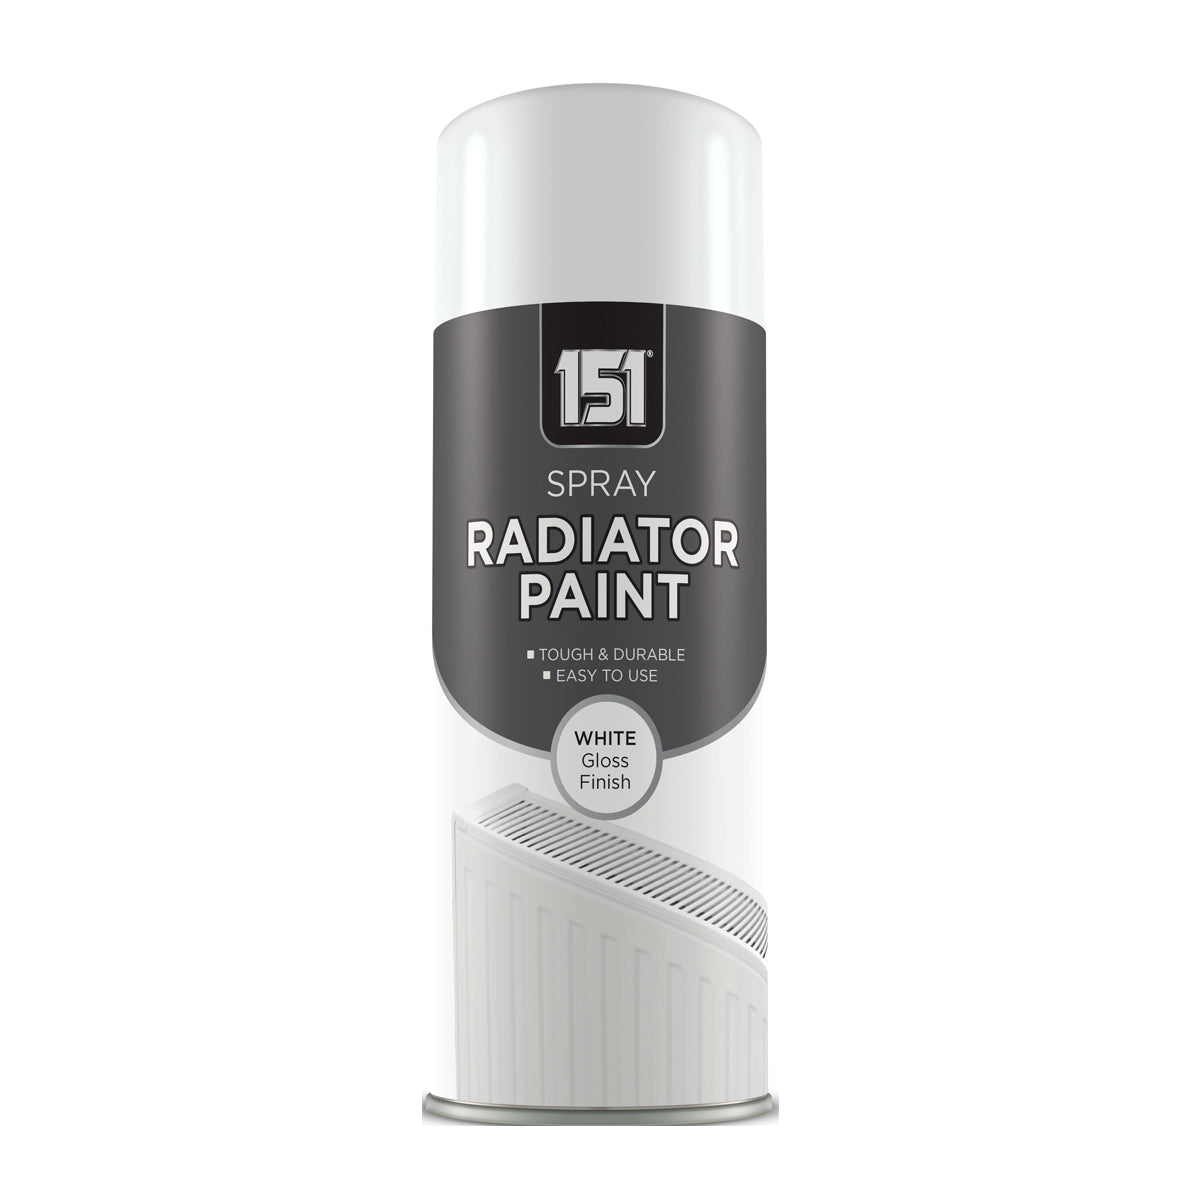 Gloss White Radiator Spray Paint